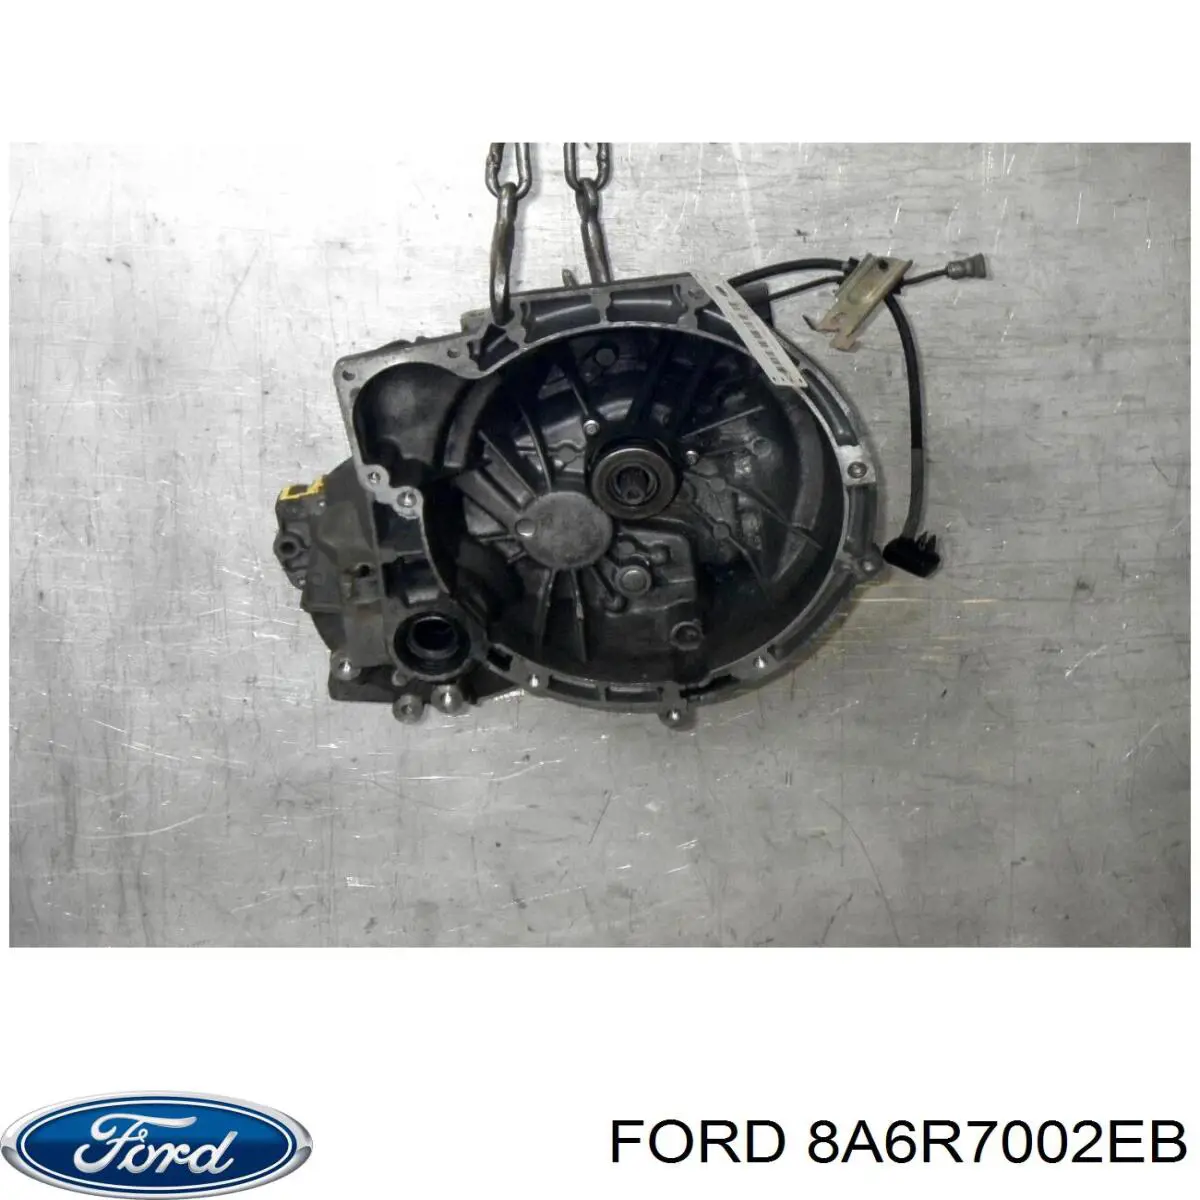 2014886 Ford кпп в сборе (механическая коробка передач)